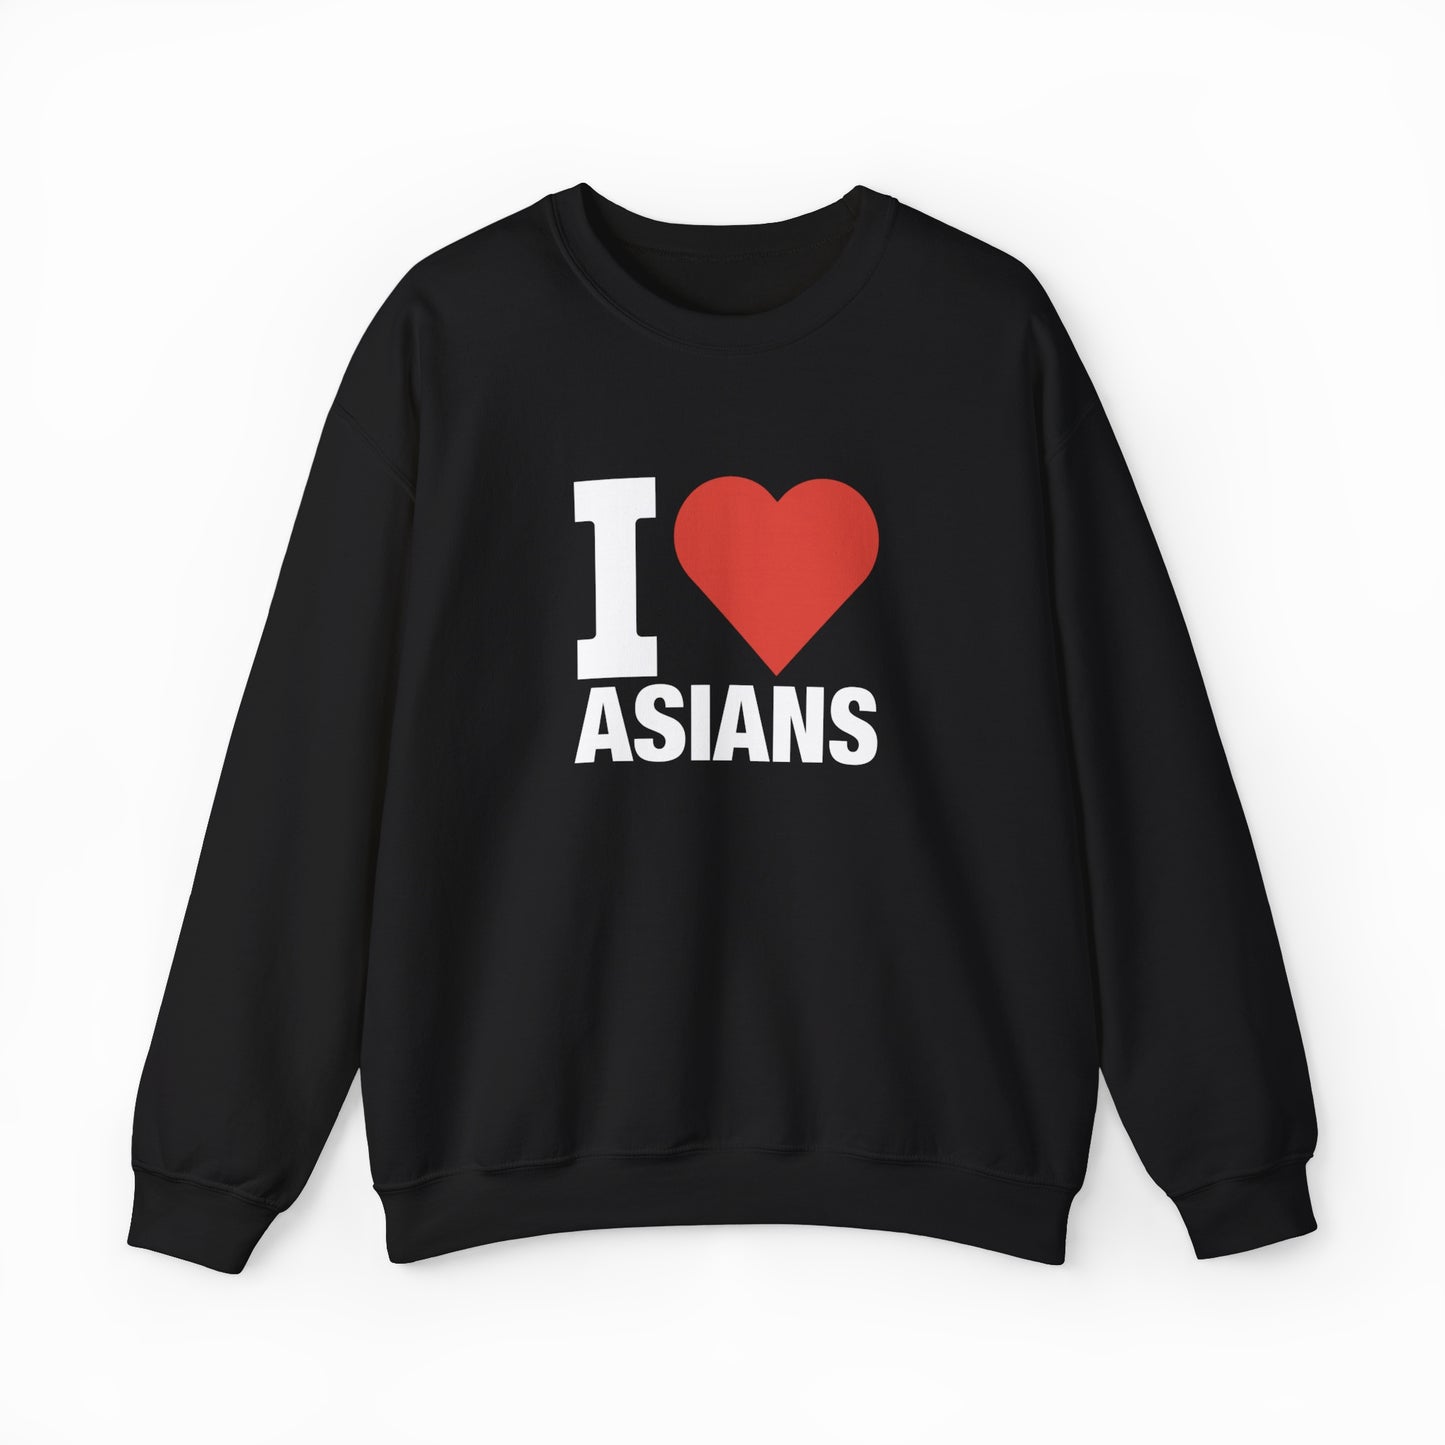 I Heart Asians Crewneck